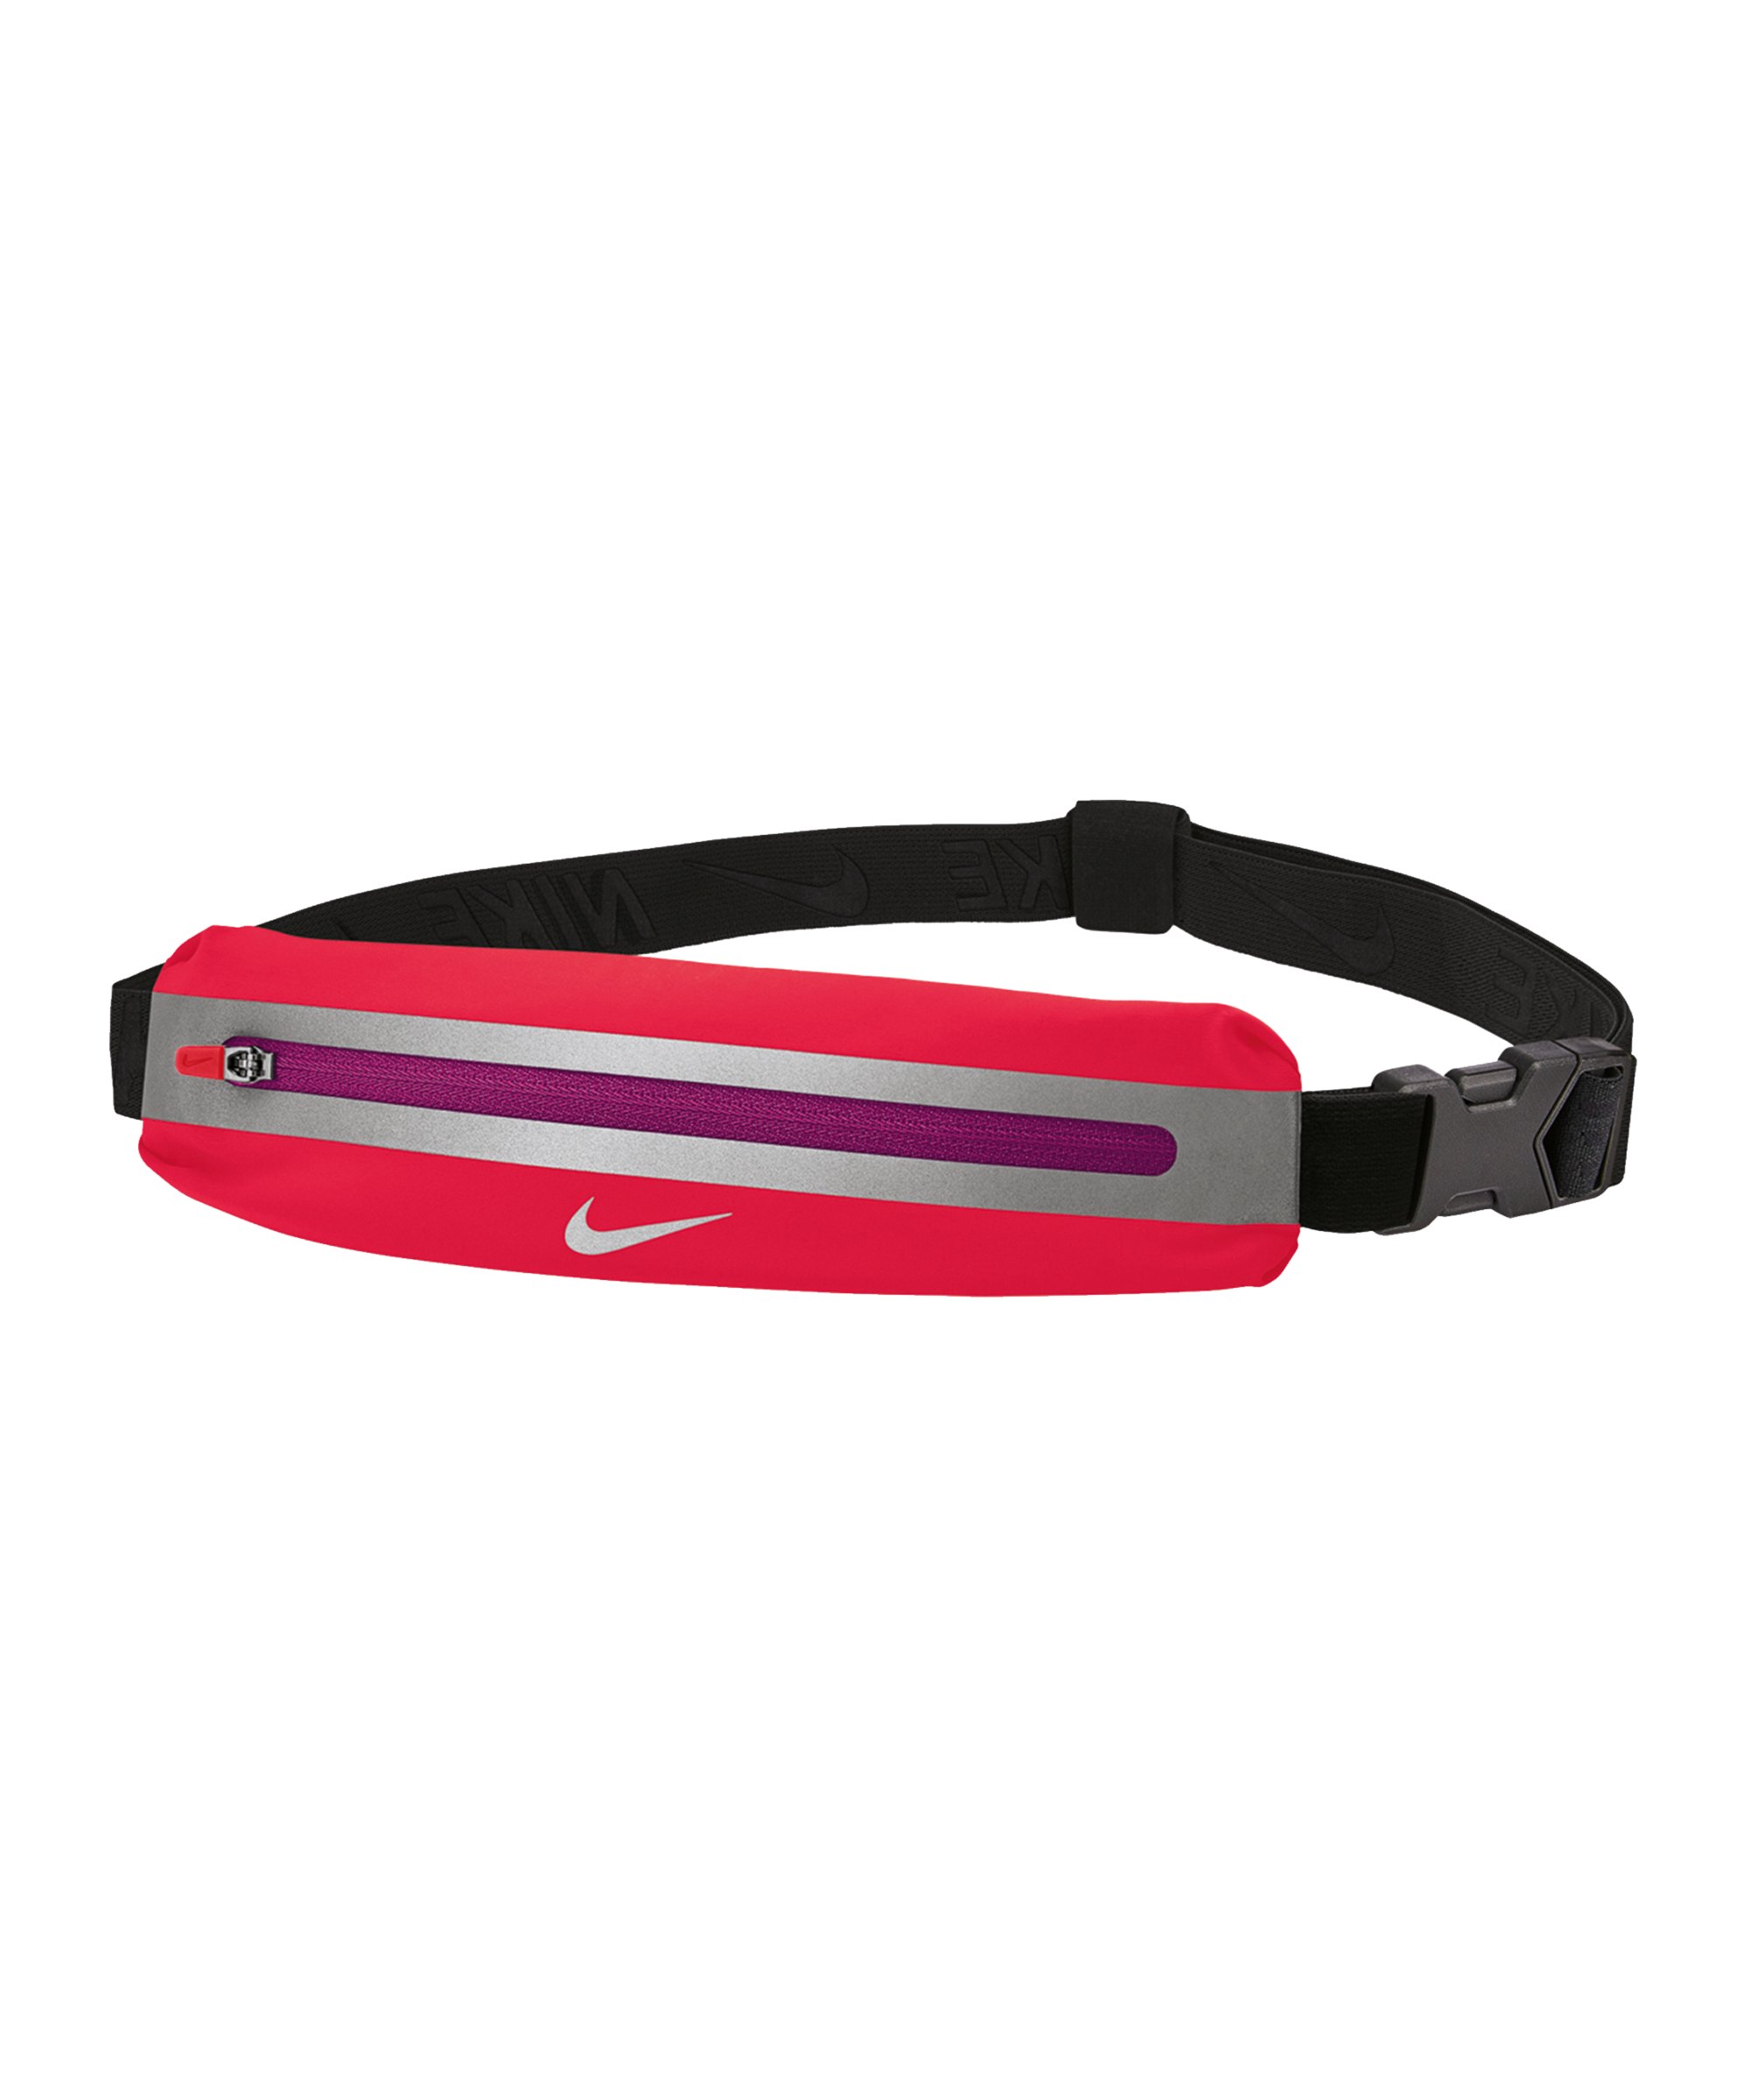 Nike Slim Hüfttasche 3.0 Pink Schwarz Silber F678 - pink